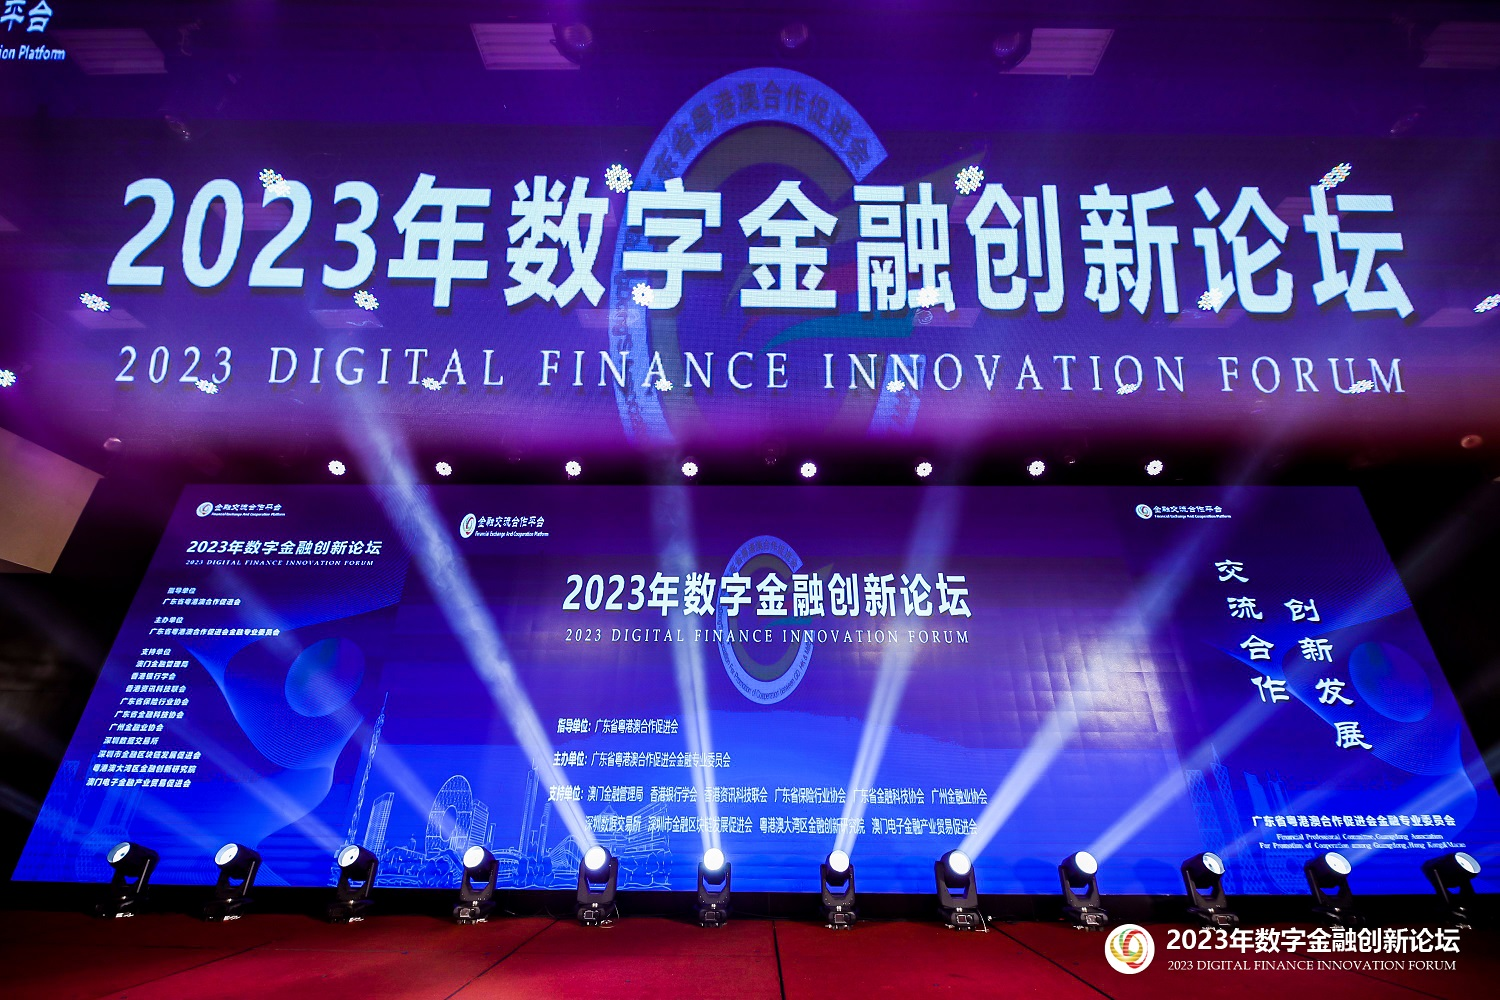 三横科技出席2023年数字金融创新论坛 数字化创新服务行业客户